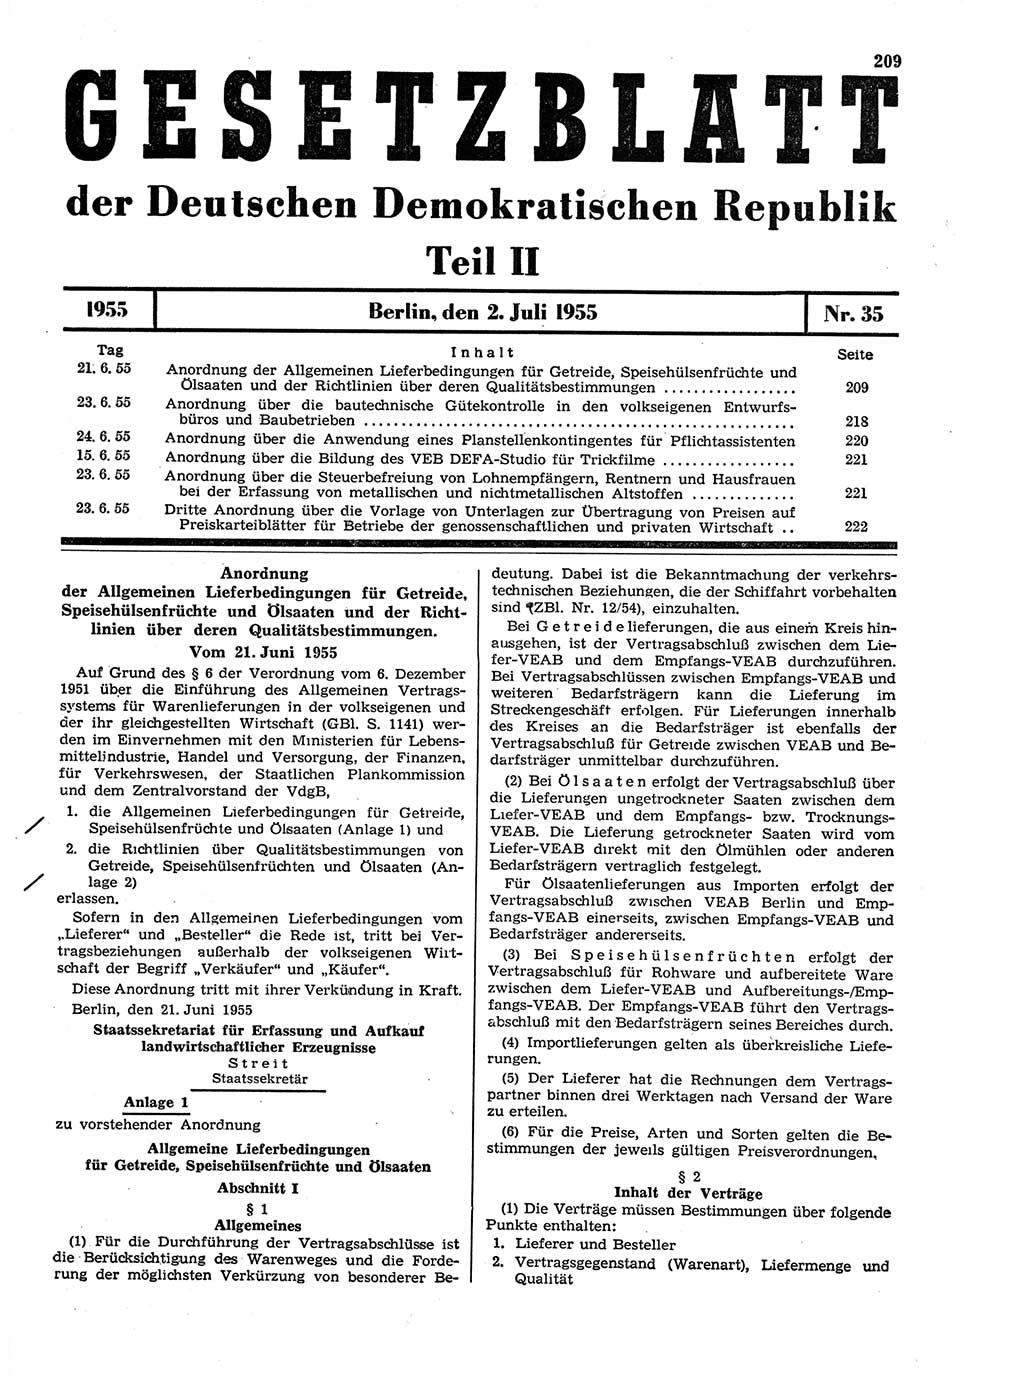 Gesetzblatt (GBl.) der Deutschen Demokratischen Republik (DDR) Teil ⅠⅠ 1955, Seite 209 (GBl. DDR ⅠⅠ 1955, S. 209)